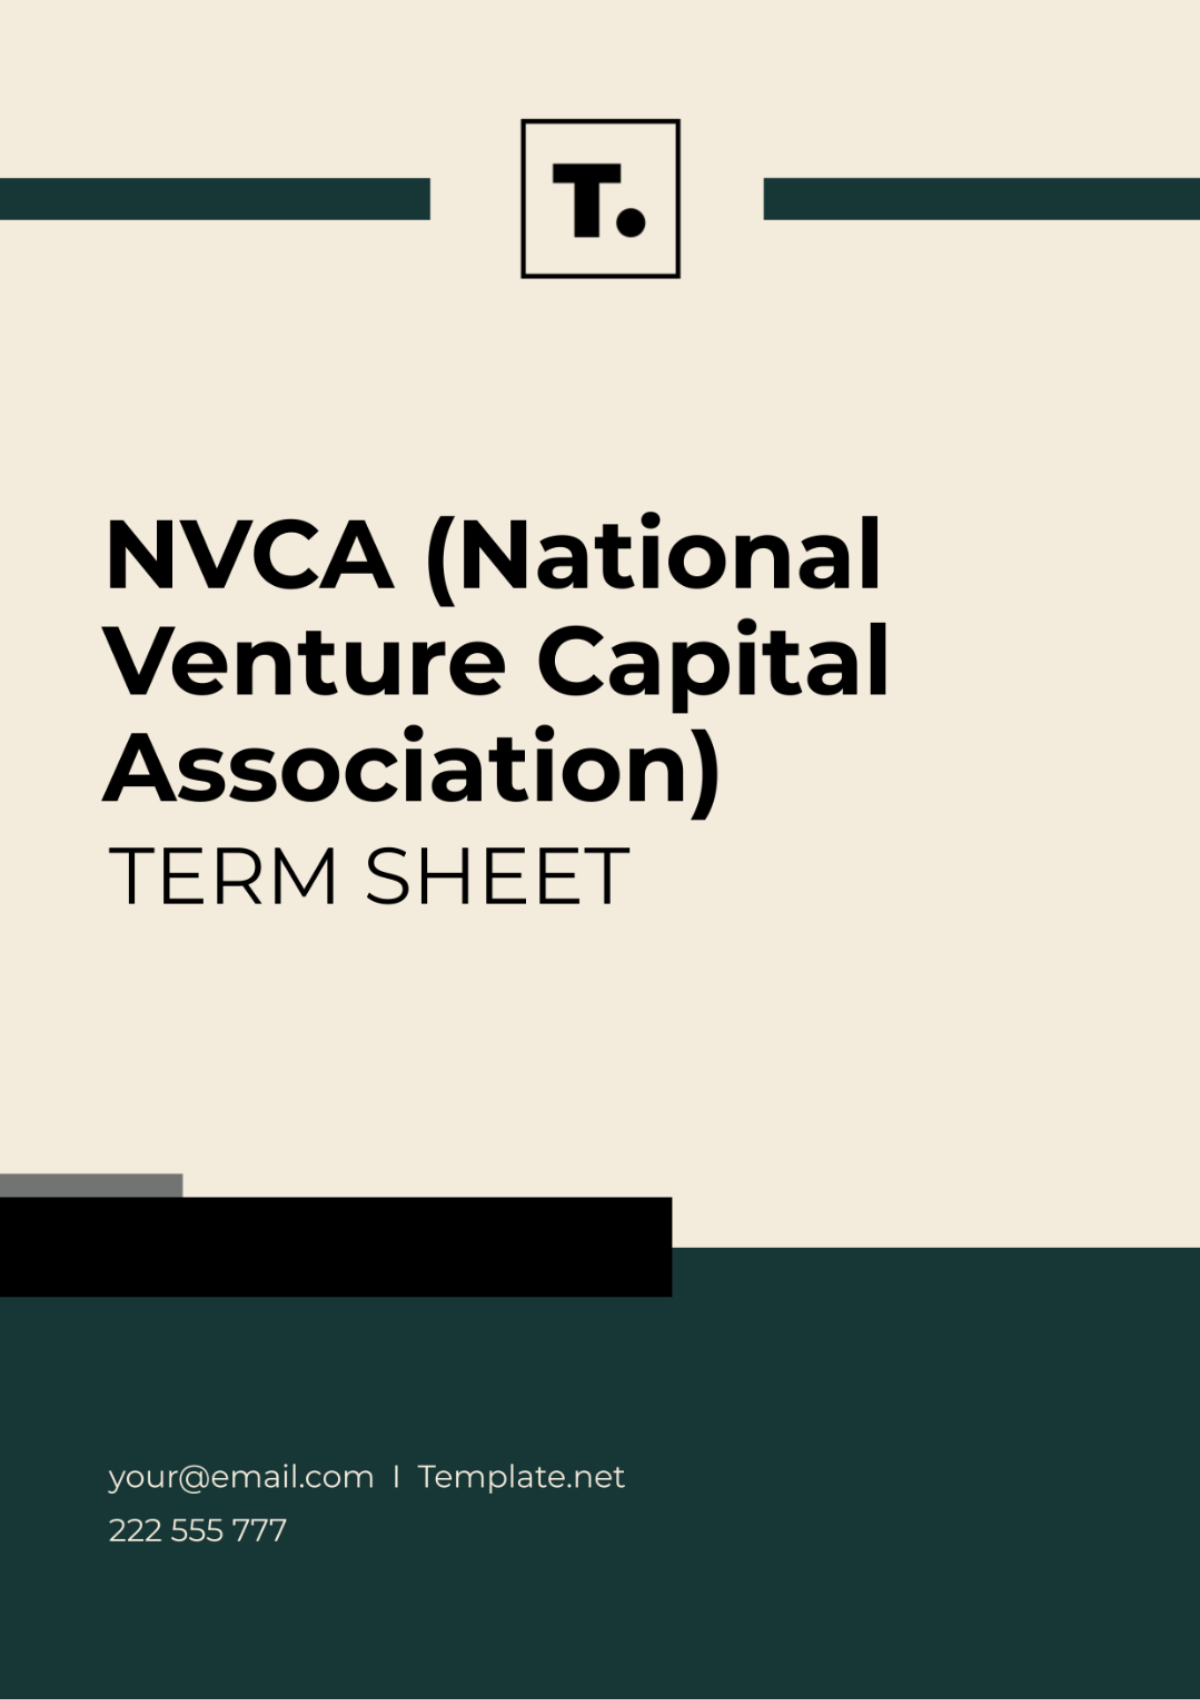 Free NVCA(National Venture Capital Association) Term Sheet Template